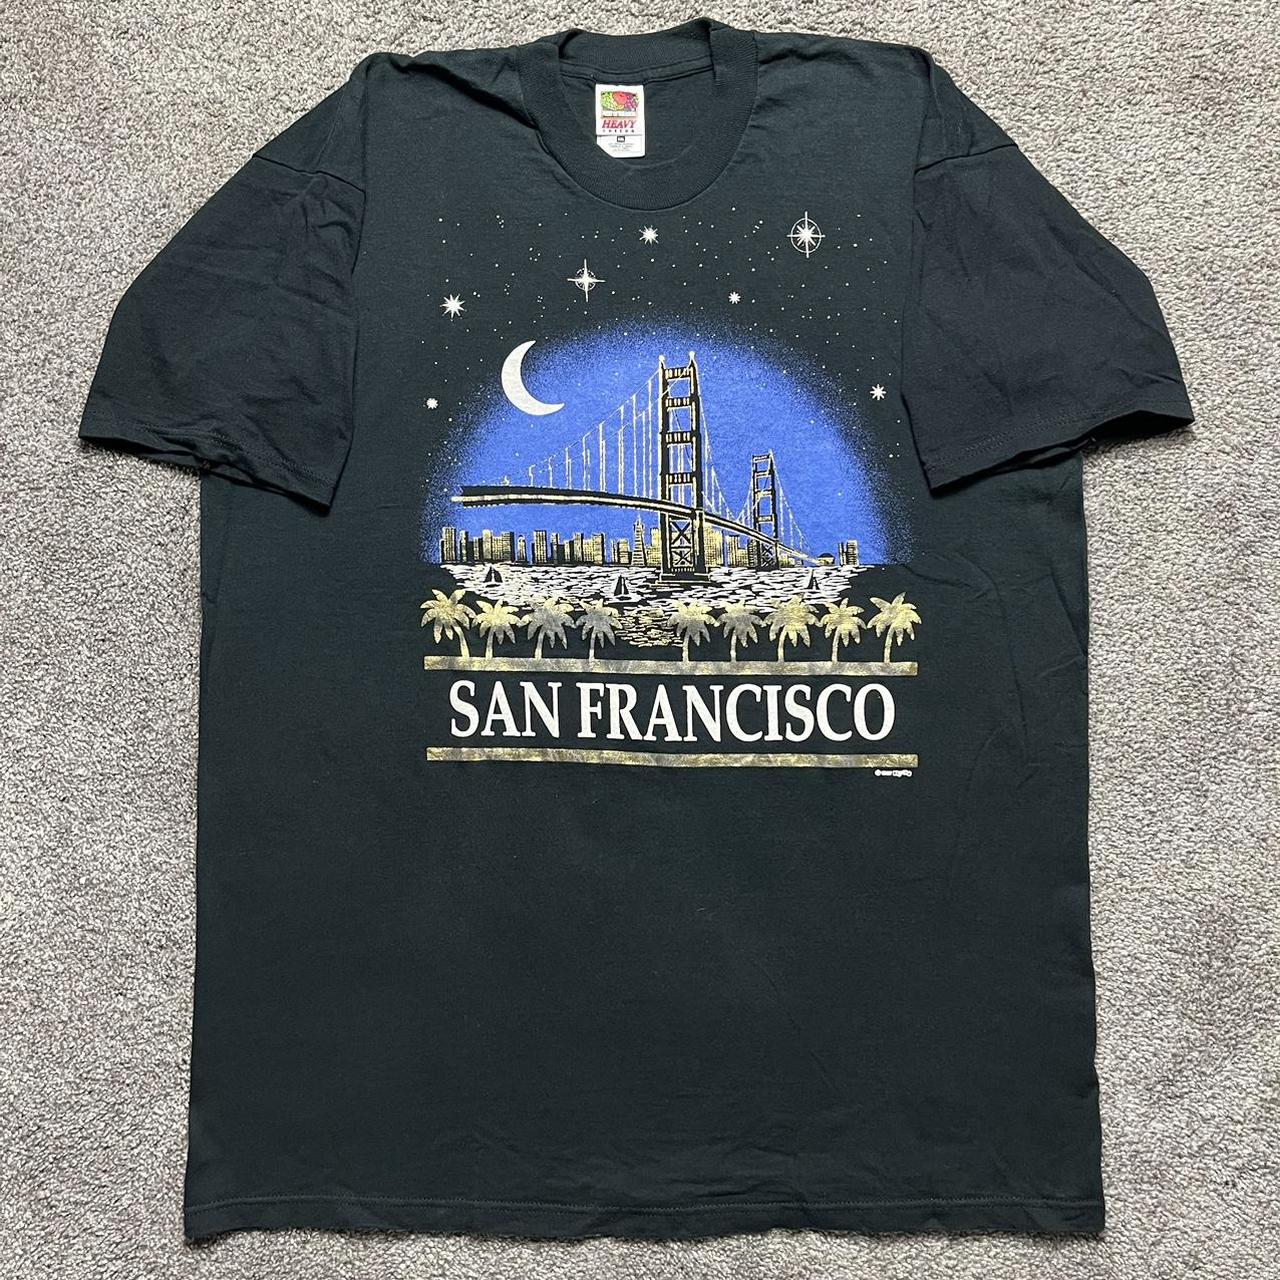 Vintage San Francisco Shirt Size: XXL fits 24.5 x... - Depop